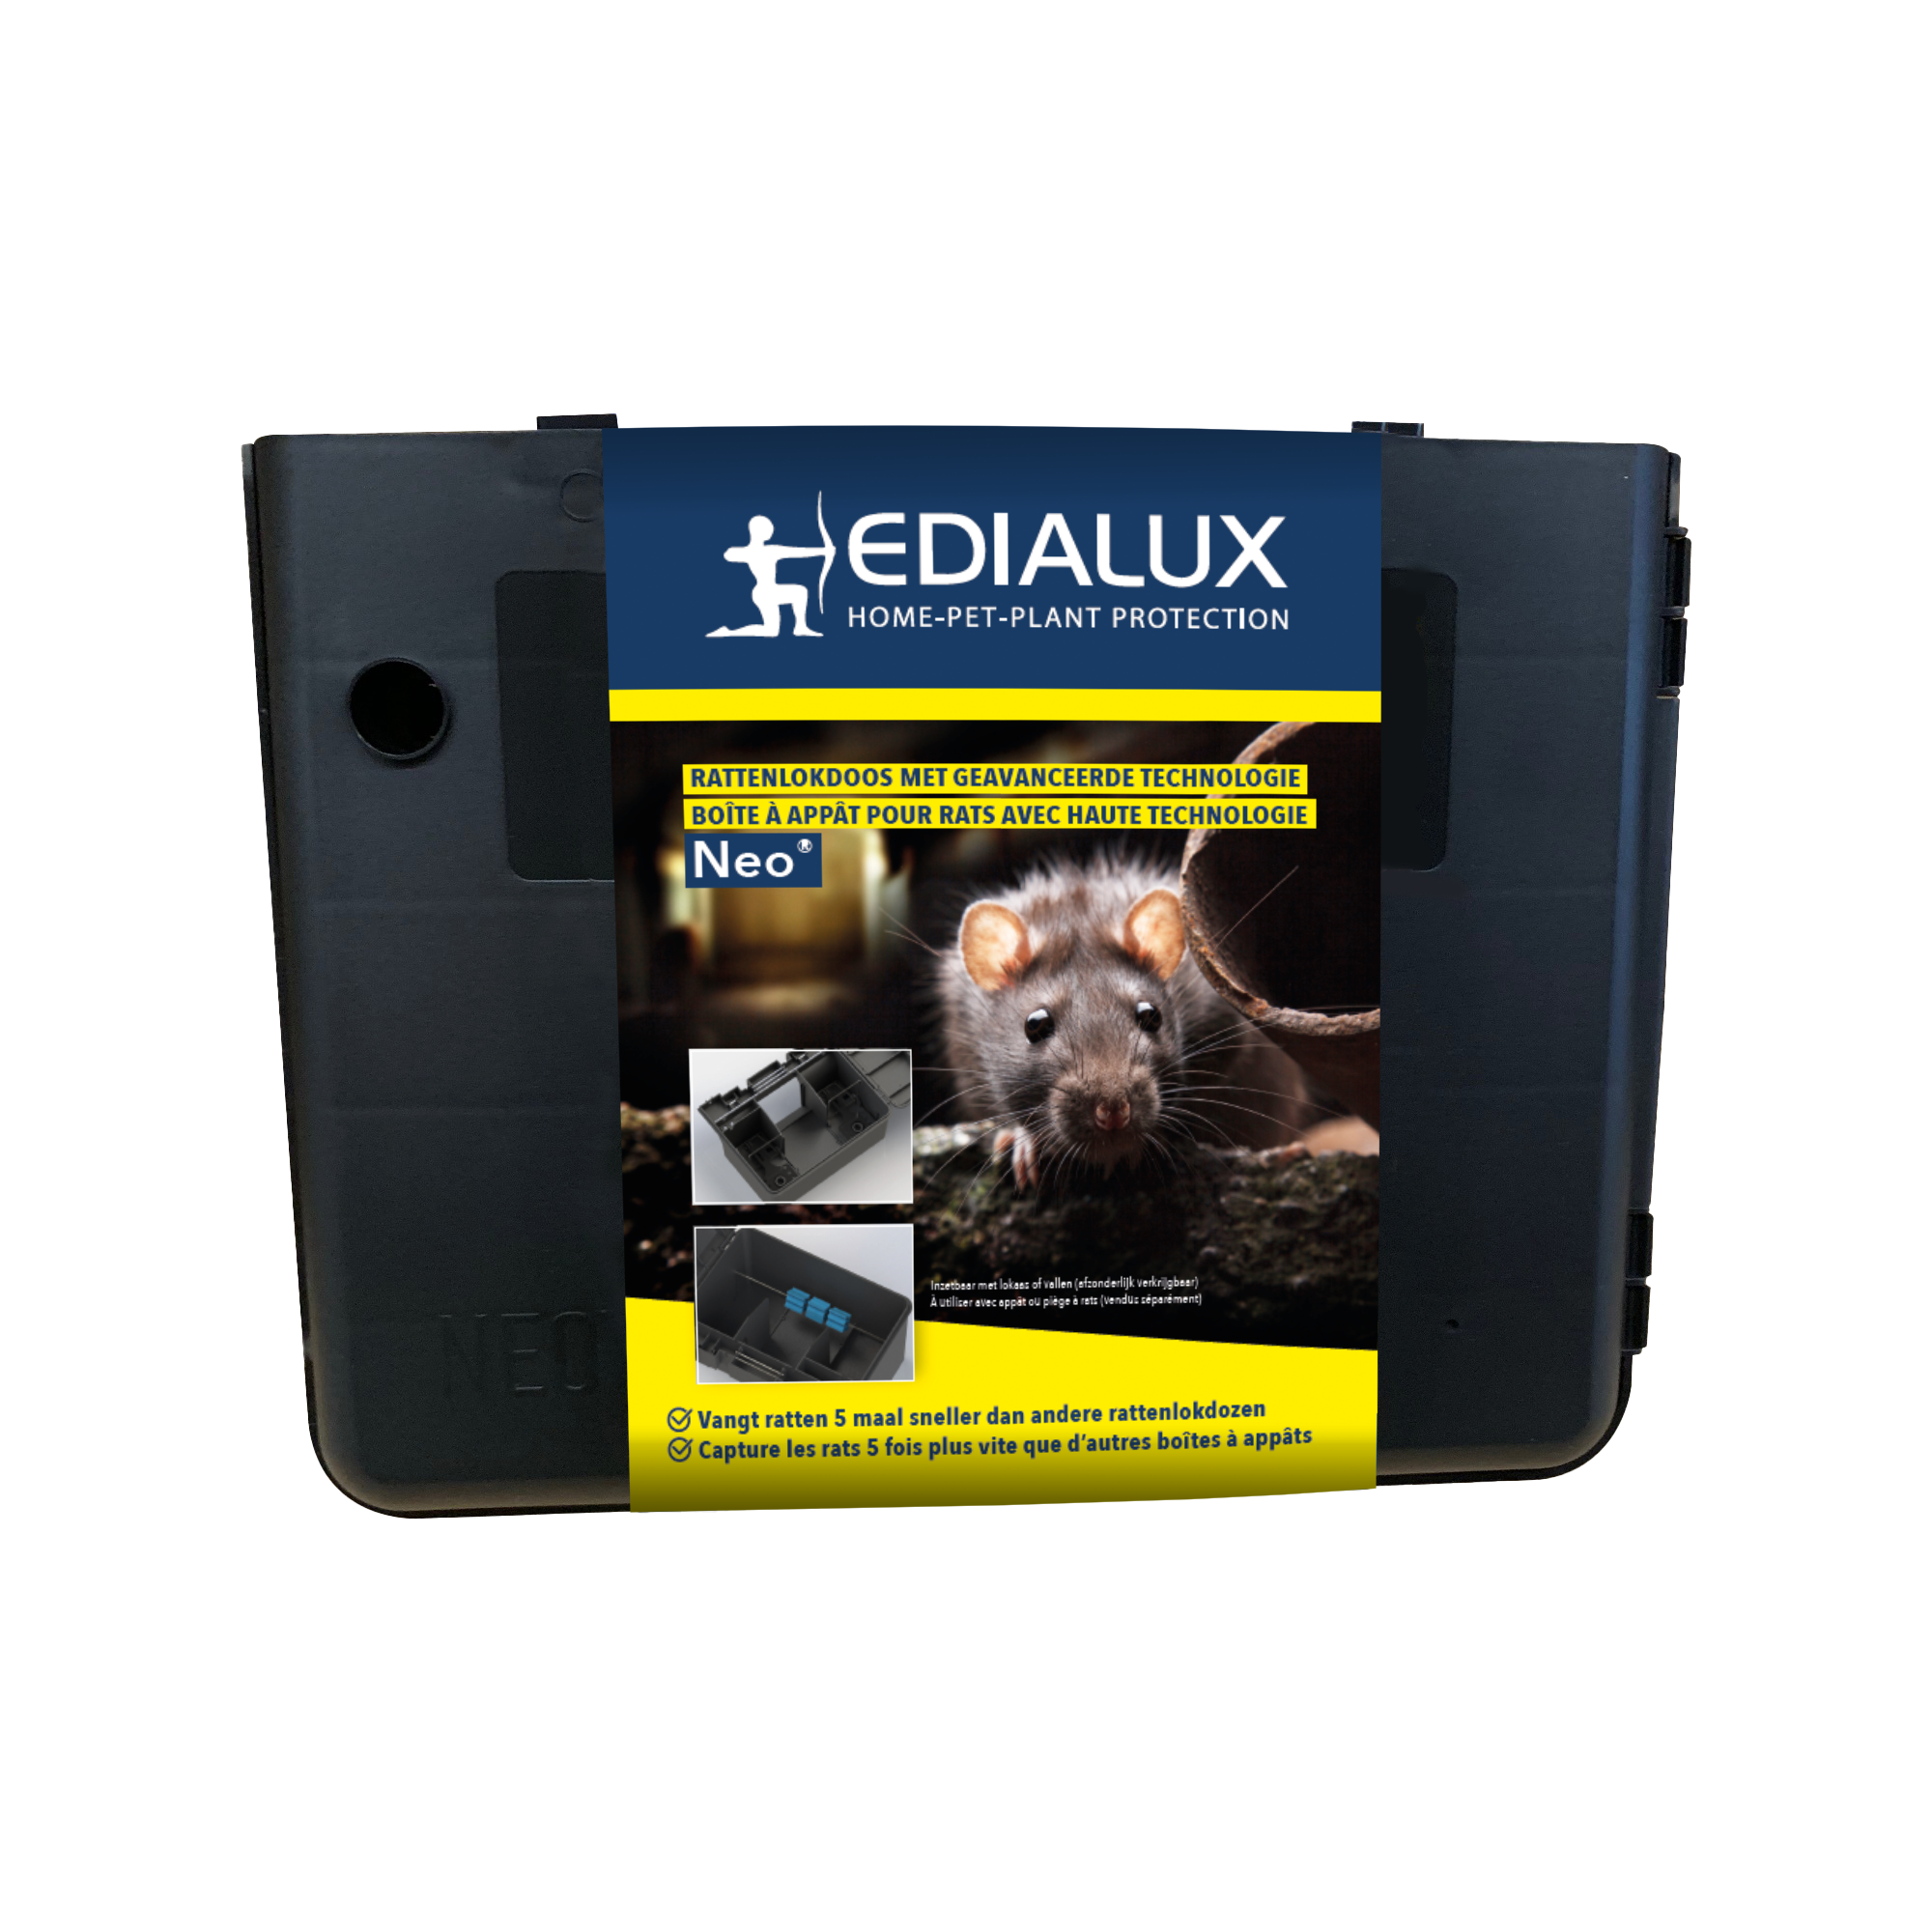 Edialux Storm Ultra Secure 300 grammes Mort-aux-rats et Souris - Mort- aux-rats 